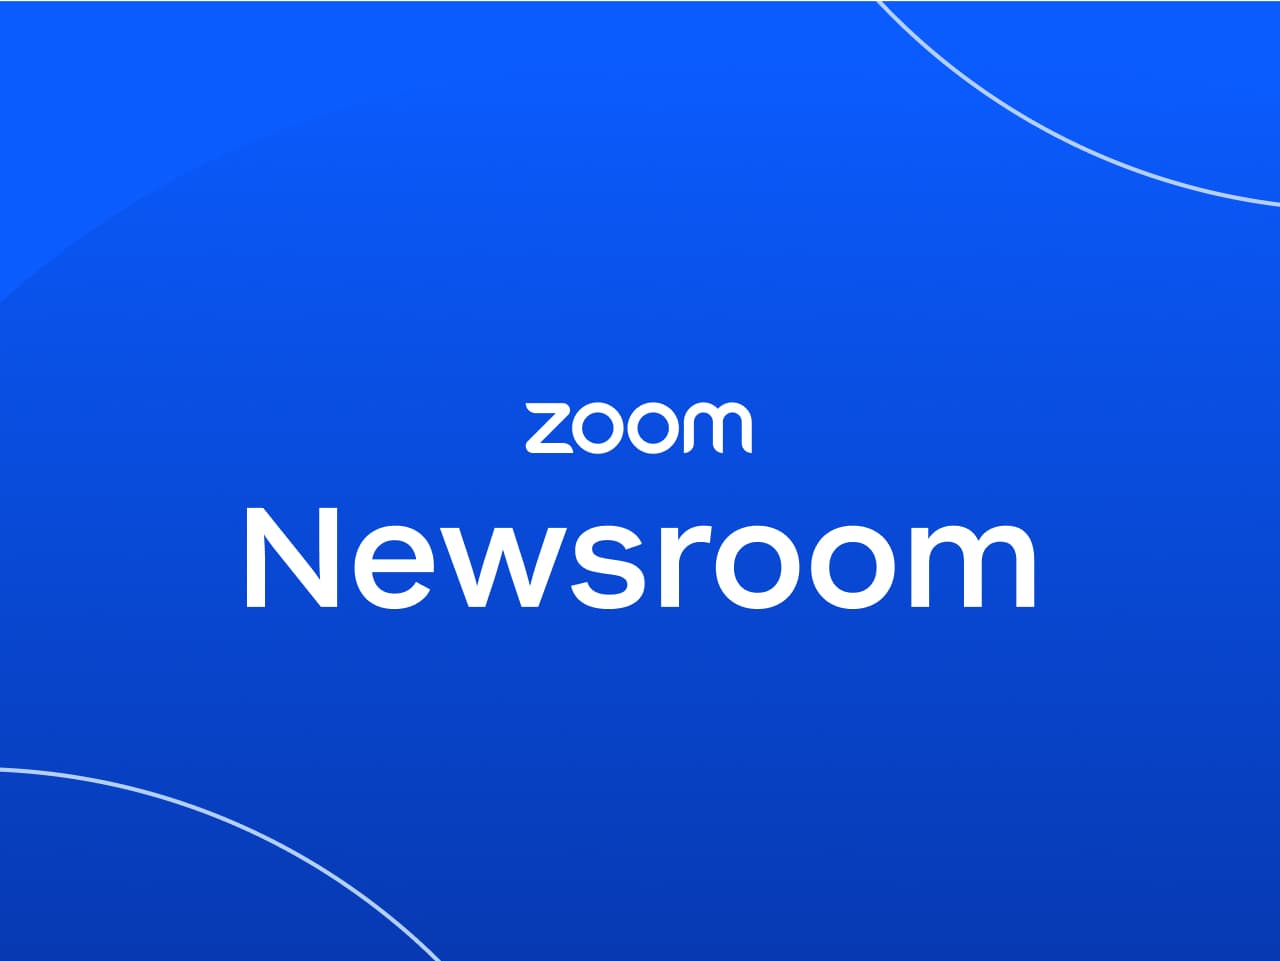 Zoom ニュースルーム